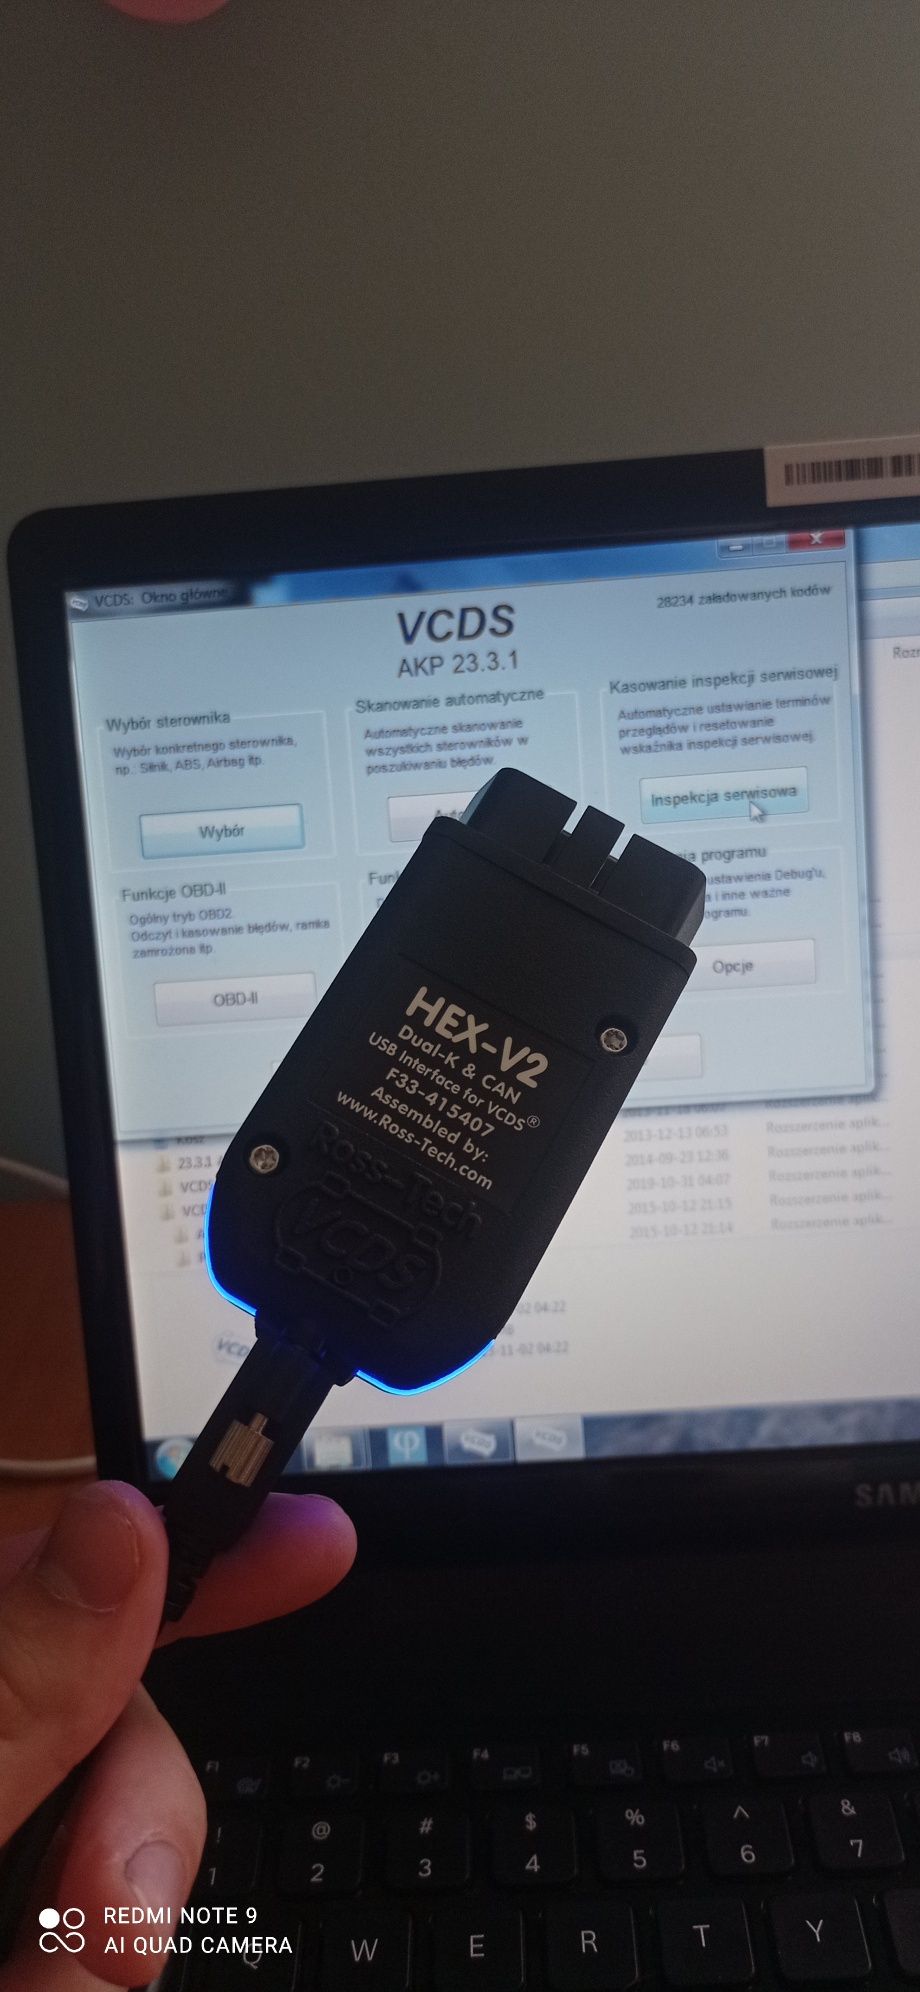 VCDS ARM HEX V2 darmowa instalacja zdalna lub na miejscu , bez limitu